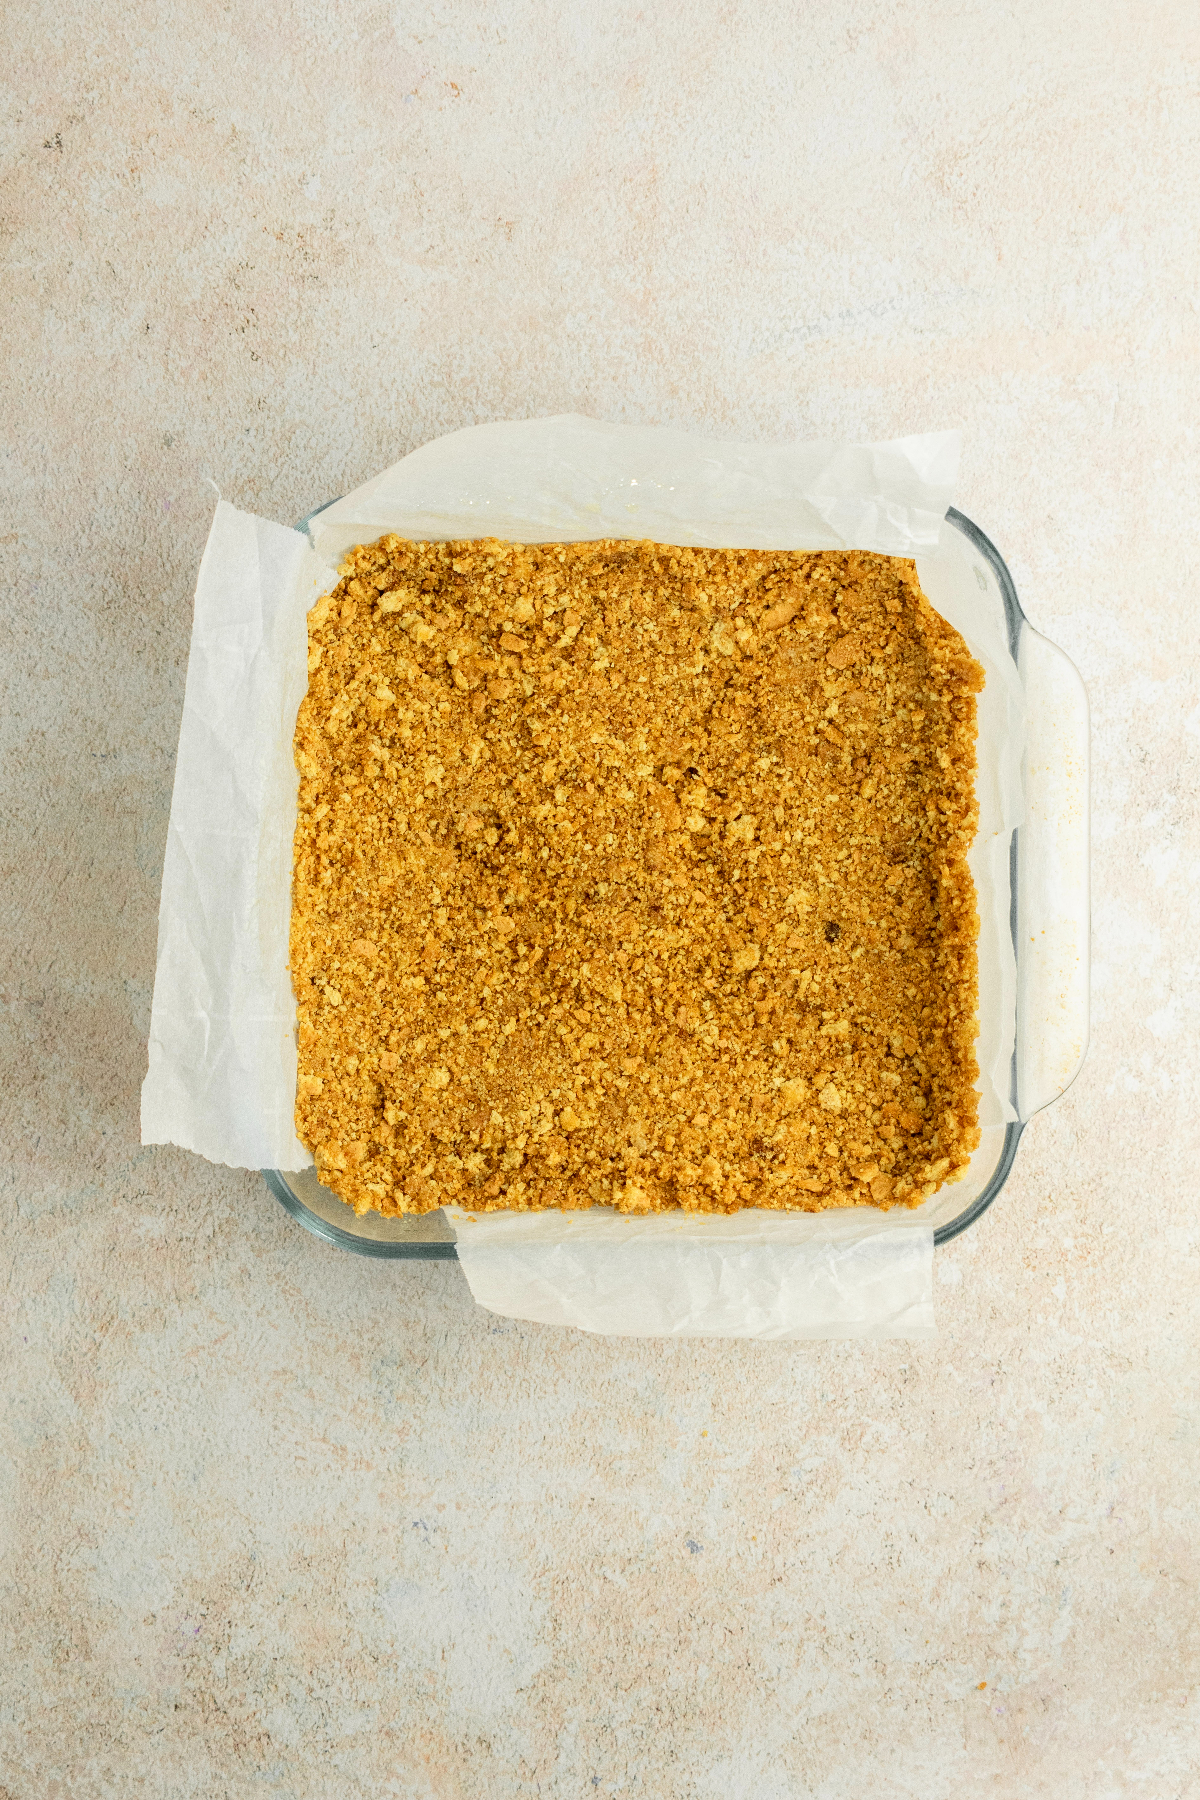 graham cracker crust in a glass baking pan.